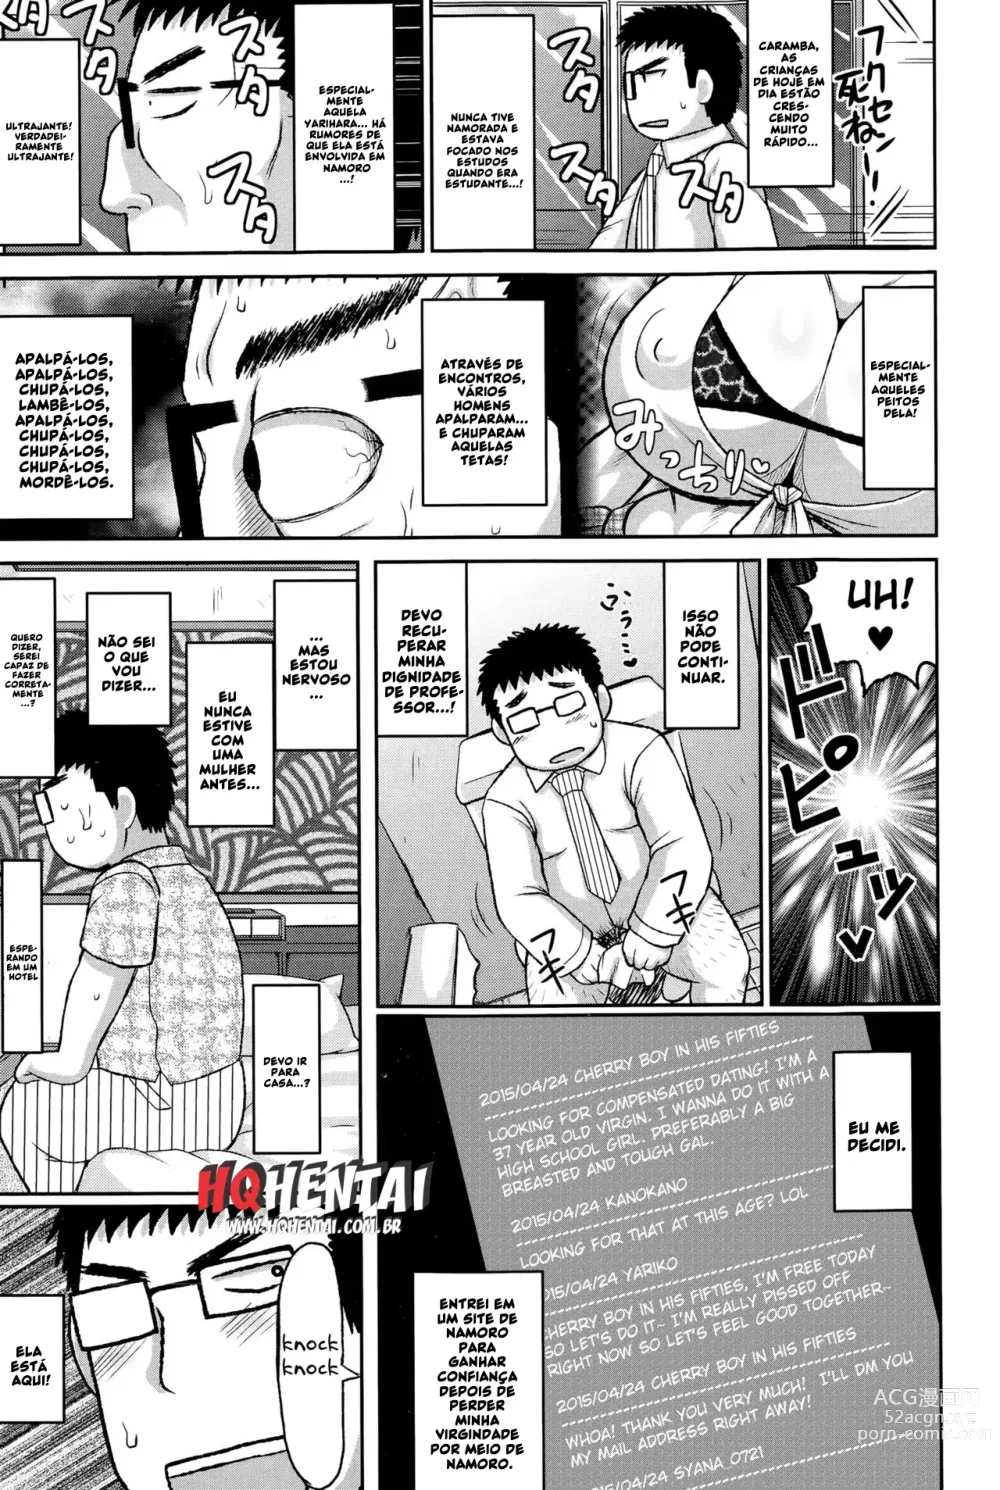 Page 4 of manga Komyu de Galko